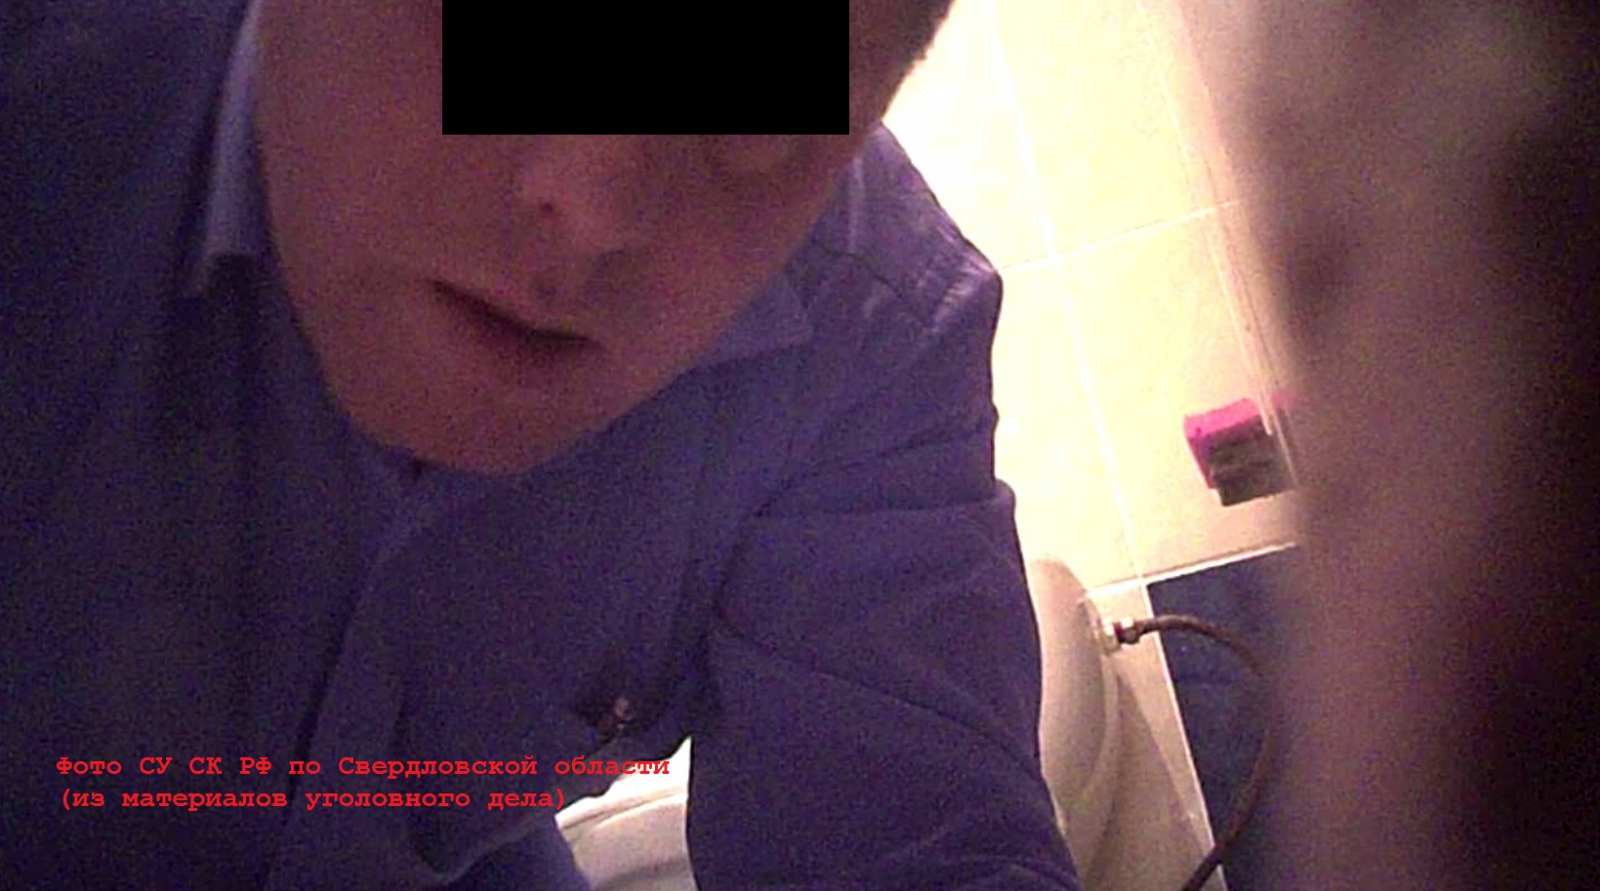 Свердловский единоросс, установивший камеру в женском туалете, избежал уголовной ответственности